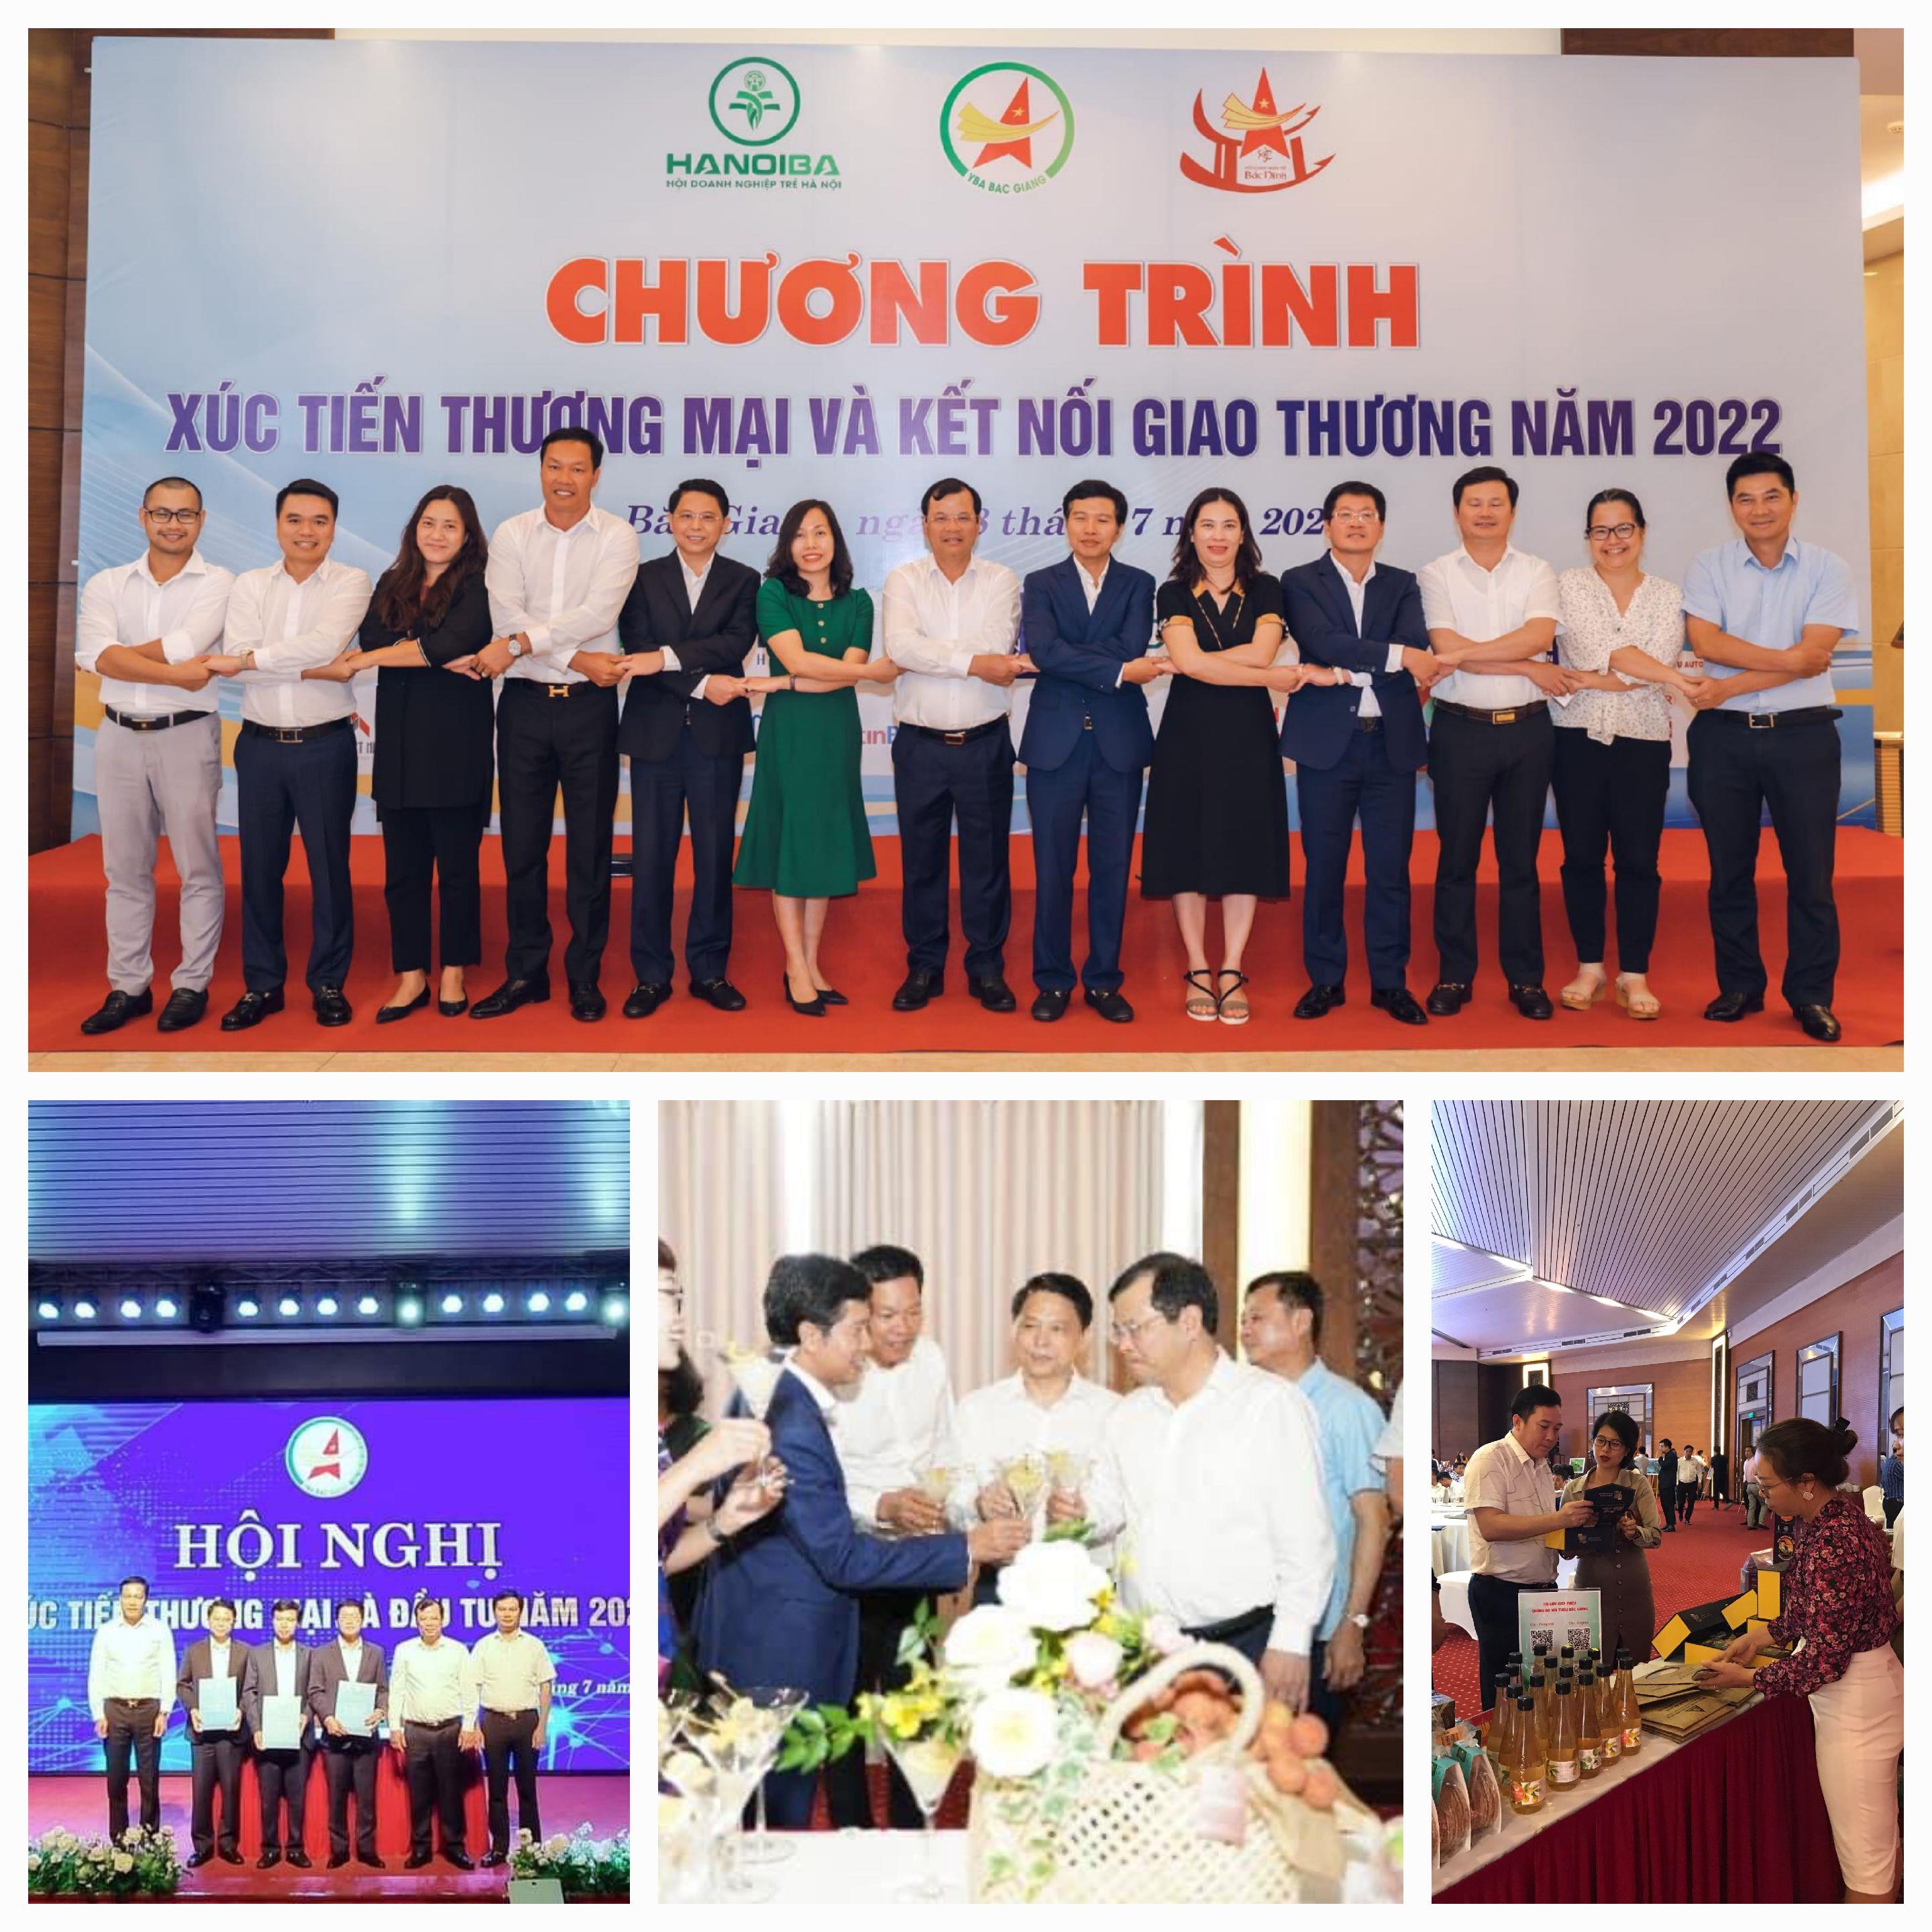 Hội nghị xúc tiến thương mại và kết nối giao thương tỉnh Bắc Giang năm 2022